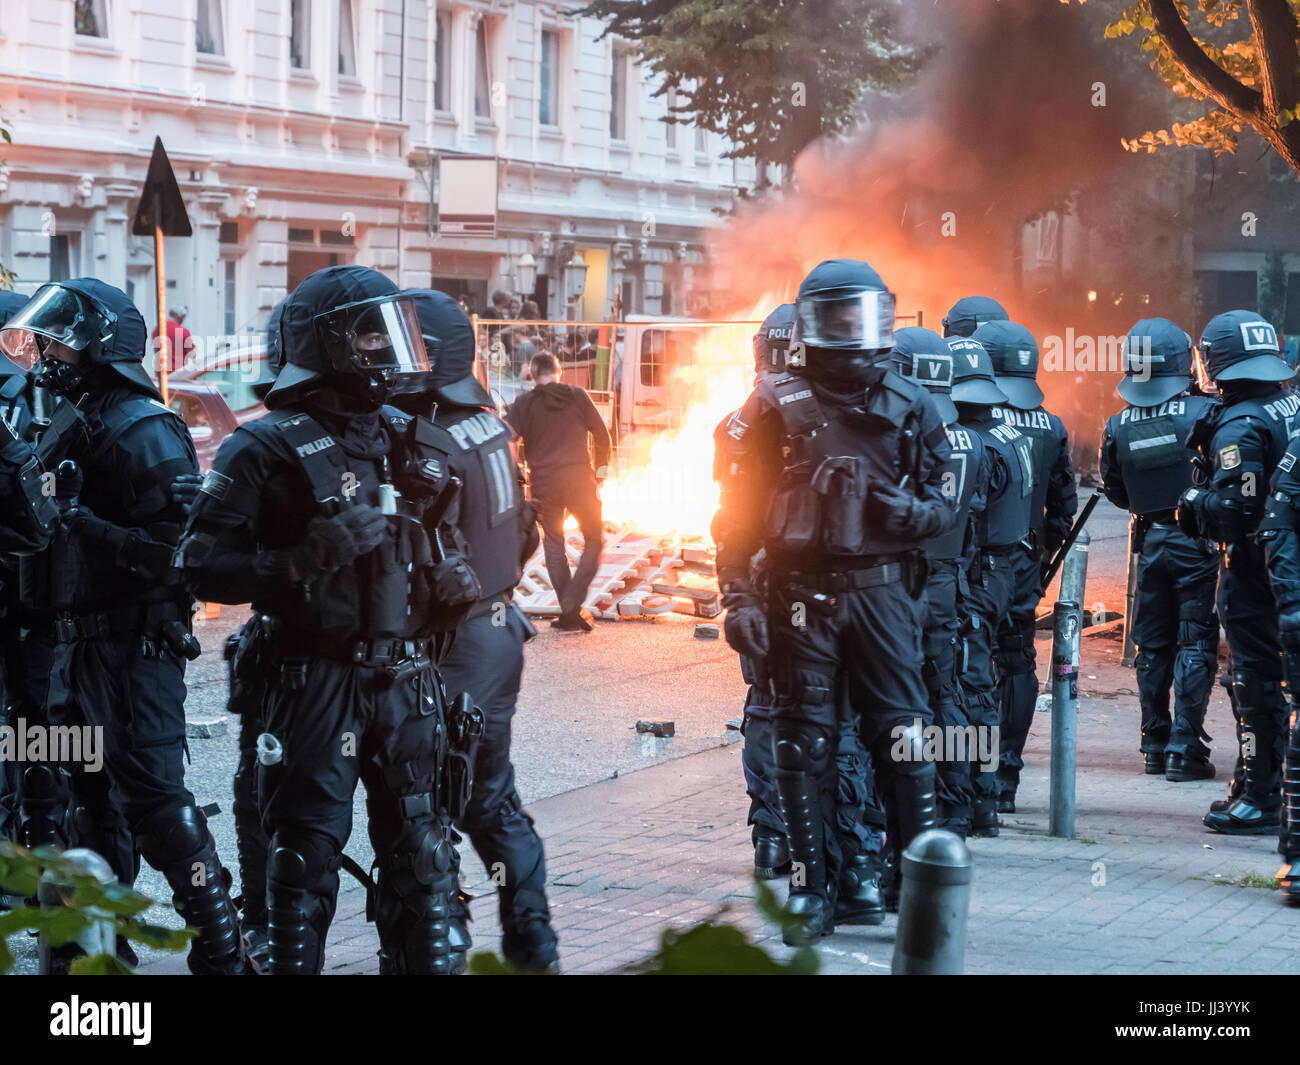 Hambourg, Allemagne - 07 juillet 2017 : vue d'un incendie causé par des manifestants pendant le sommet du G20 à Hambourg, Allemagne Banque D'Images